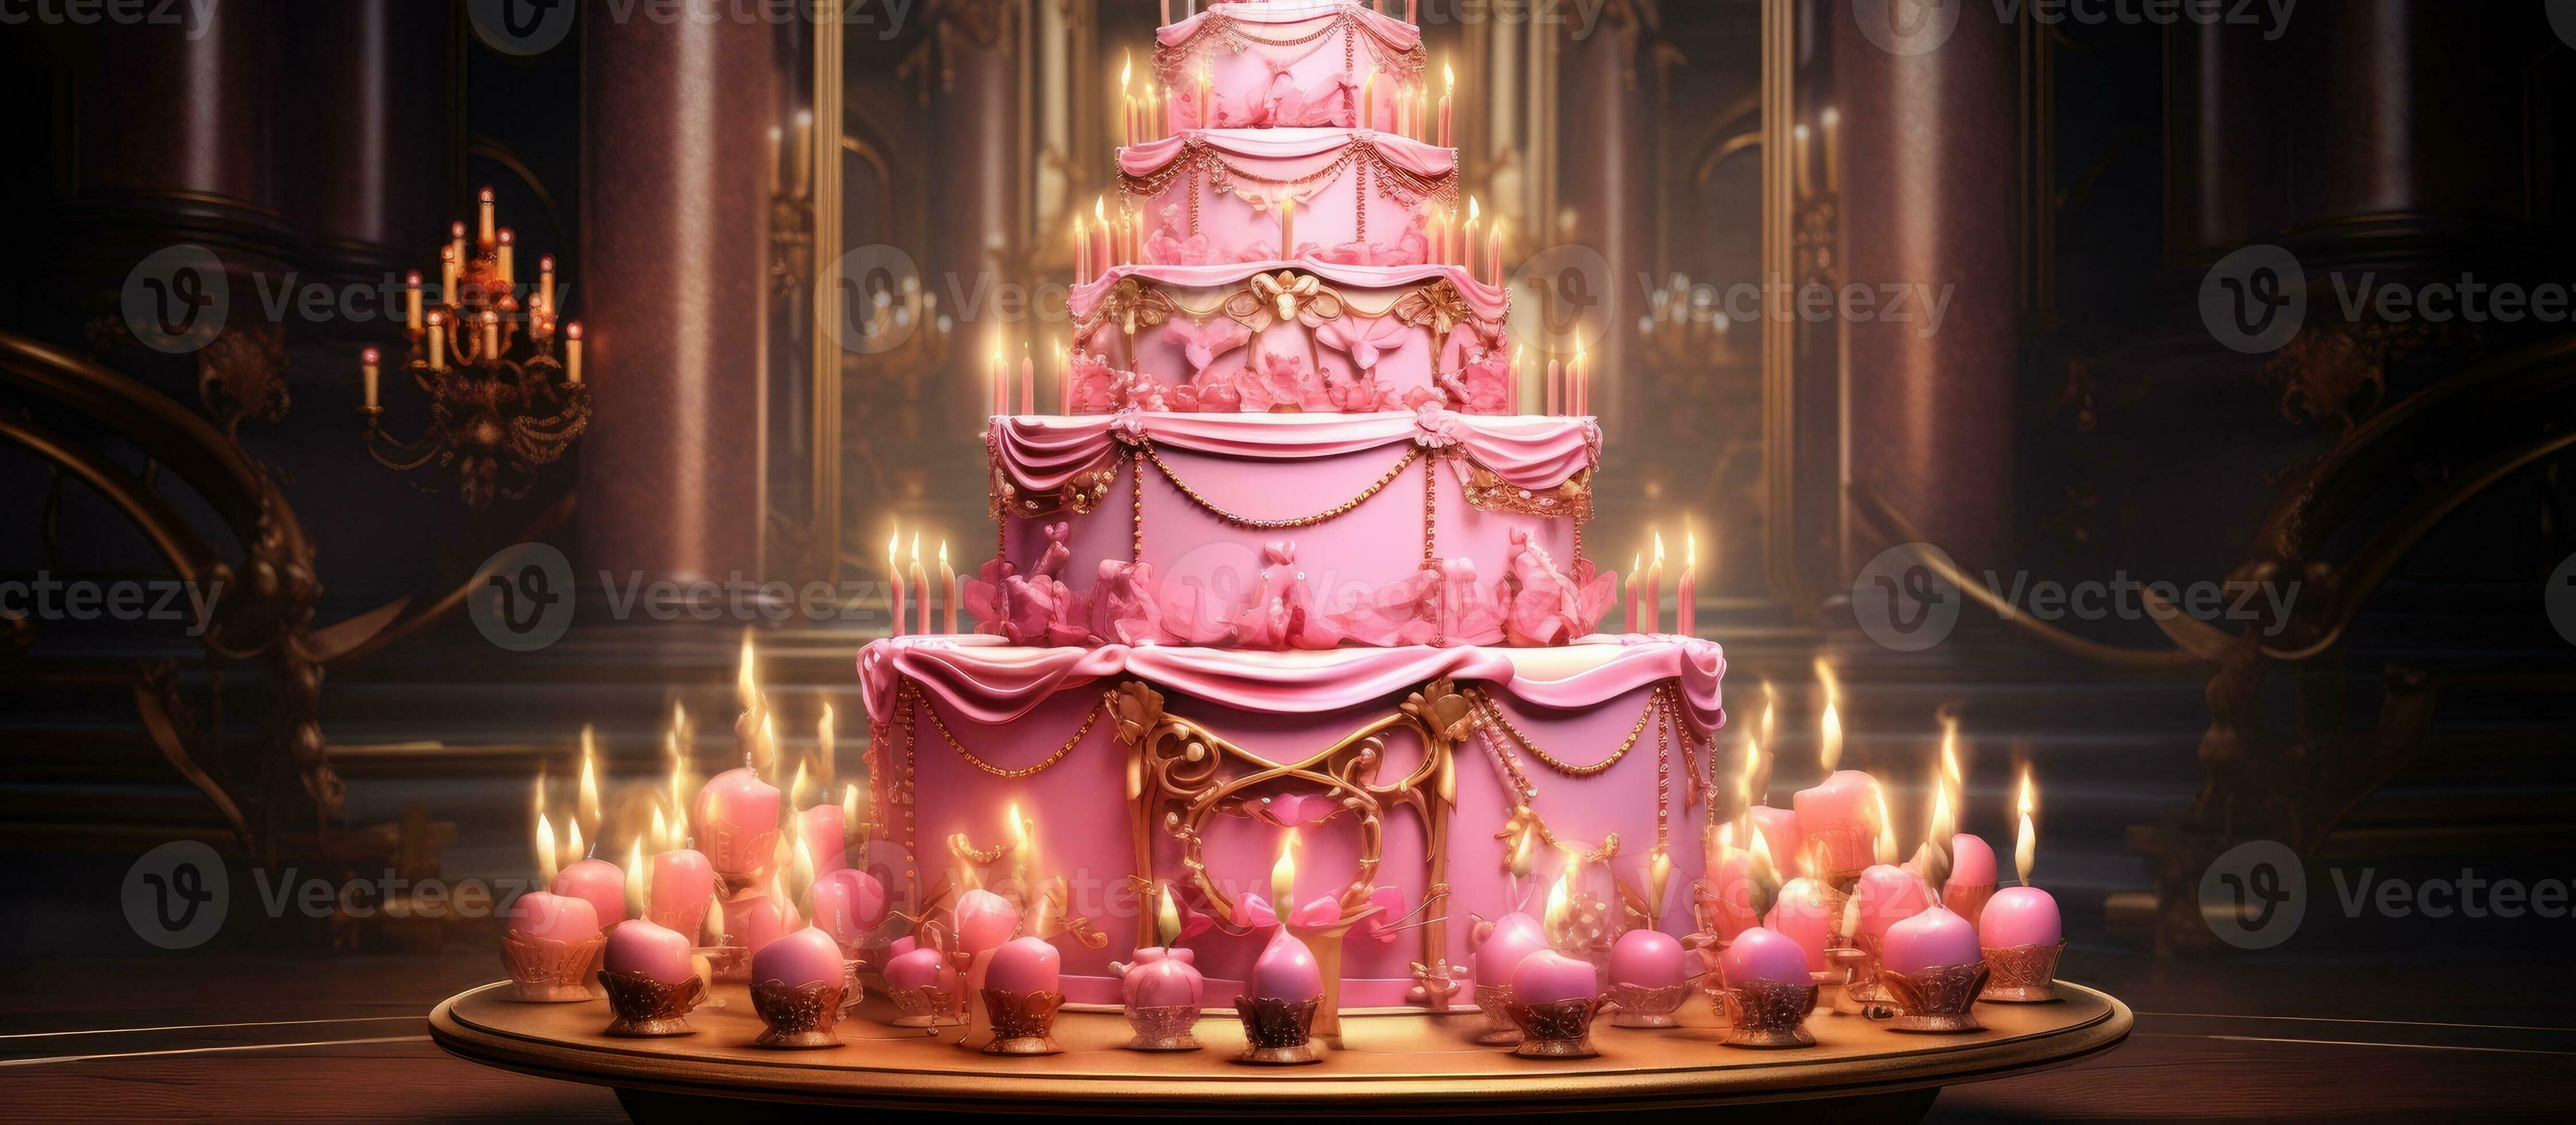 opulento rosado cumpleaños pastel con abundante dorado velas 27105757 Foto de  stock en Vecteezy